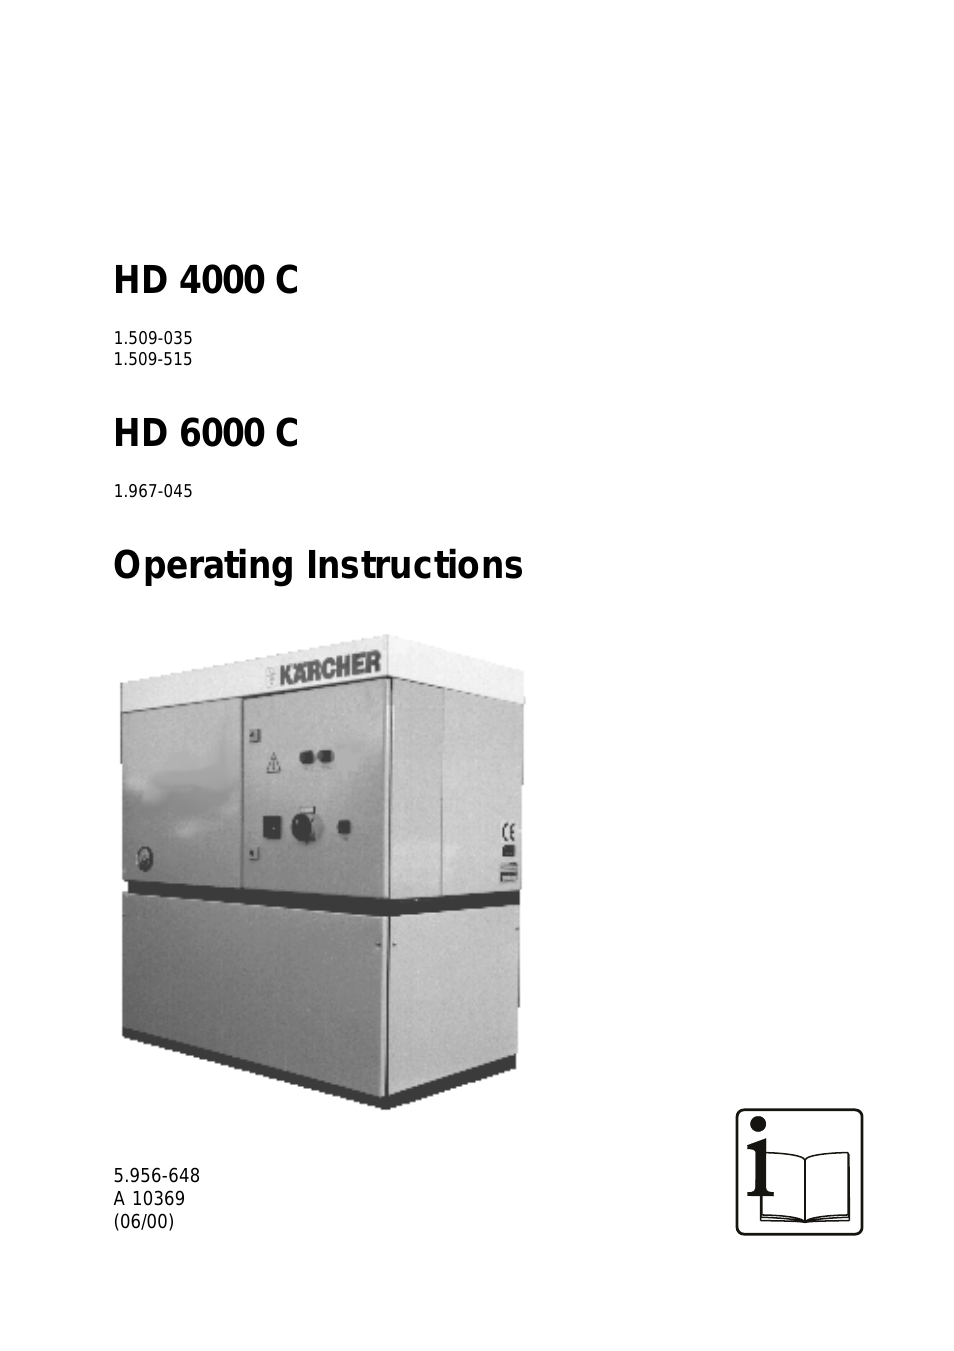 HD 4000 C